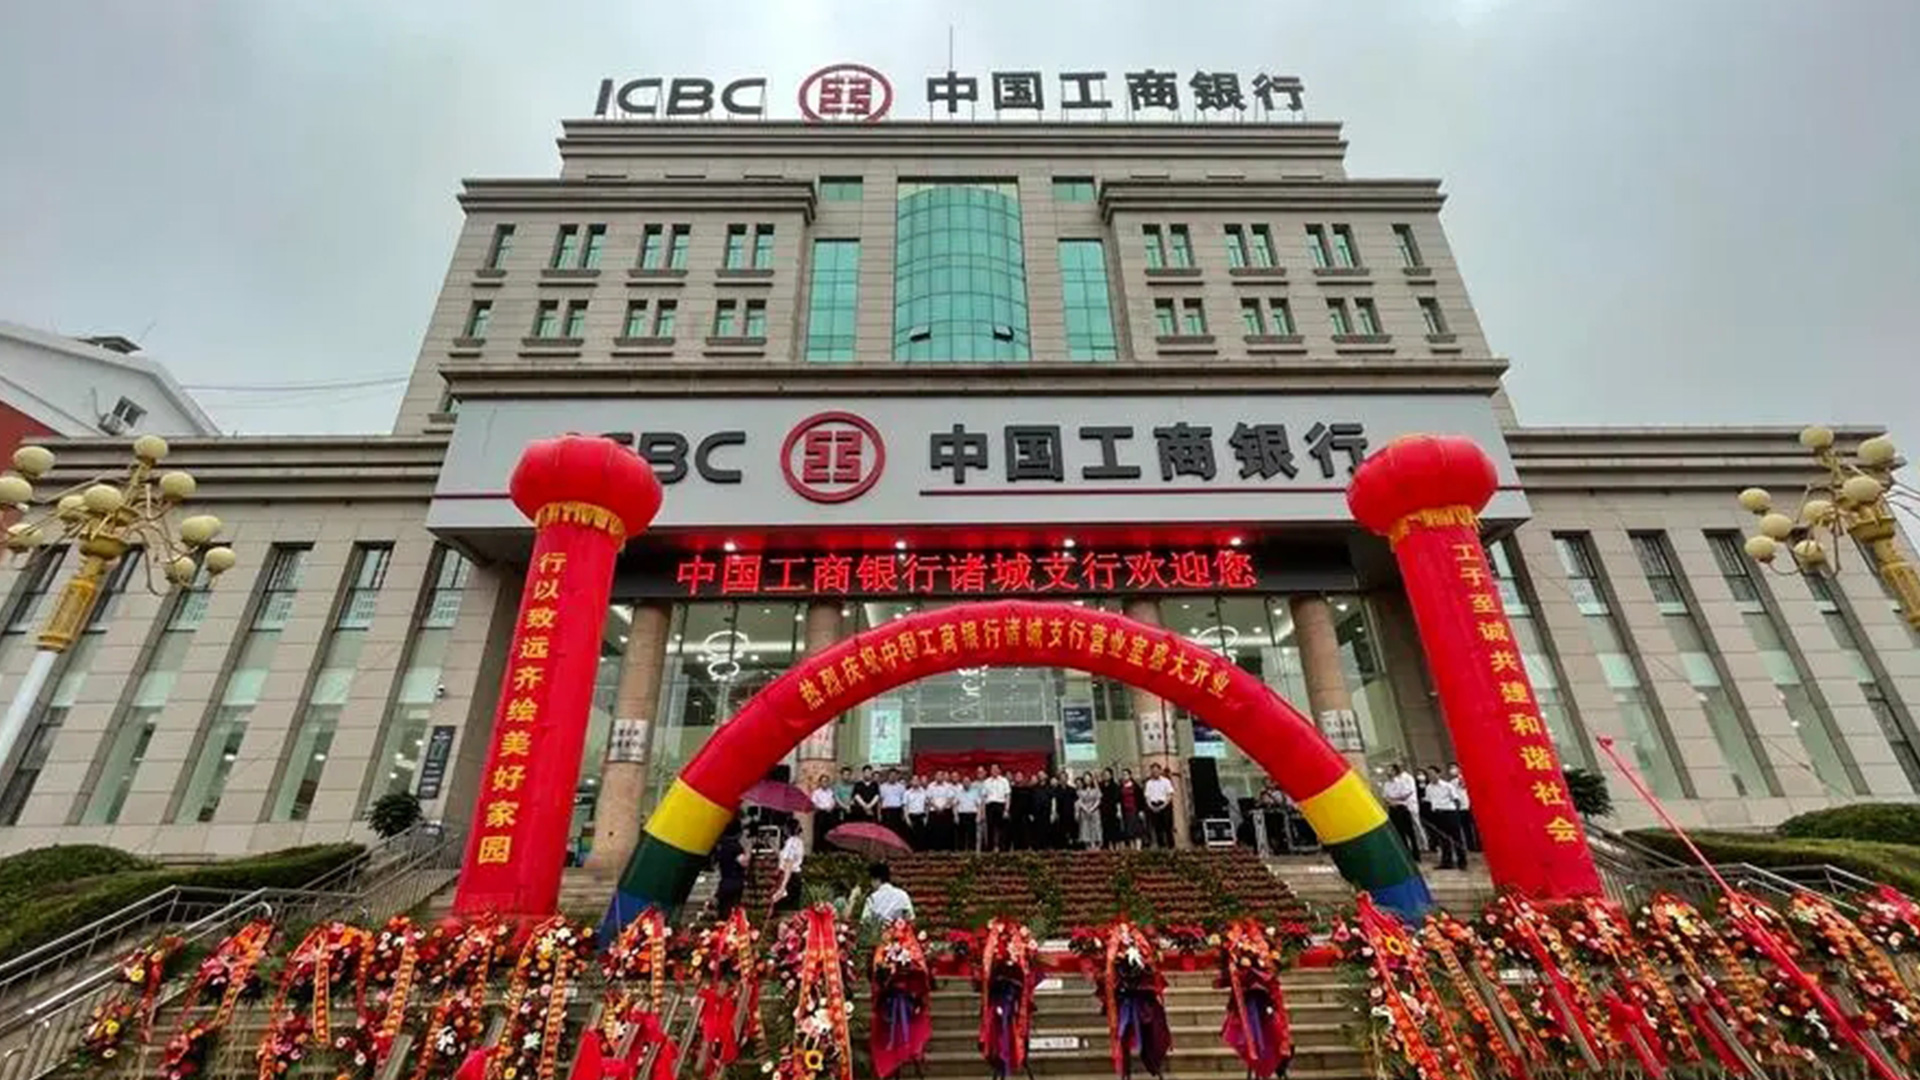 中国工商银行ICBC的标志设计招牌形象.jpg